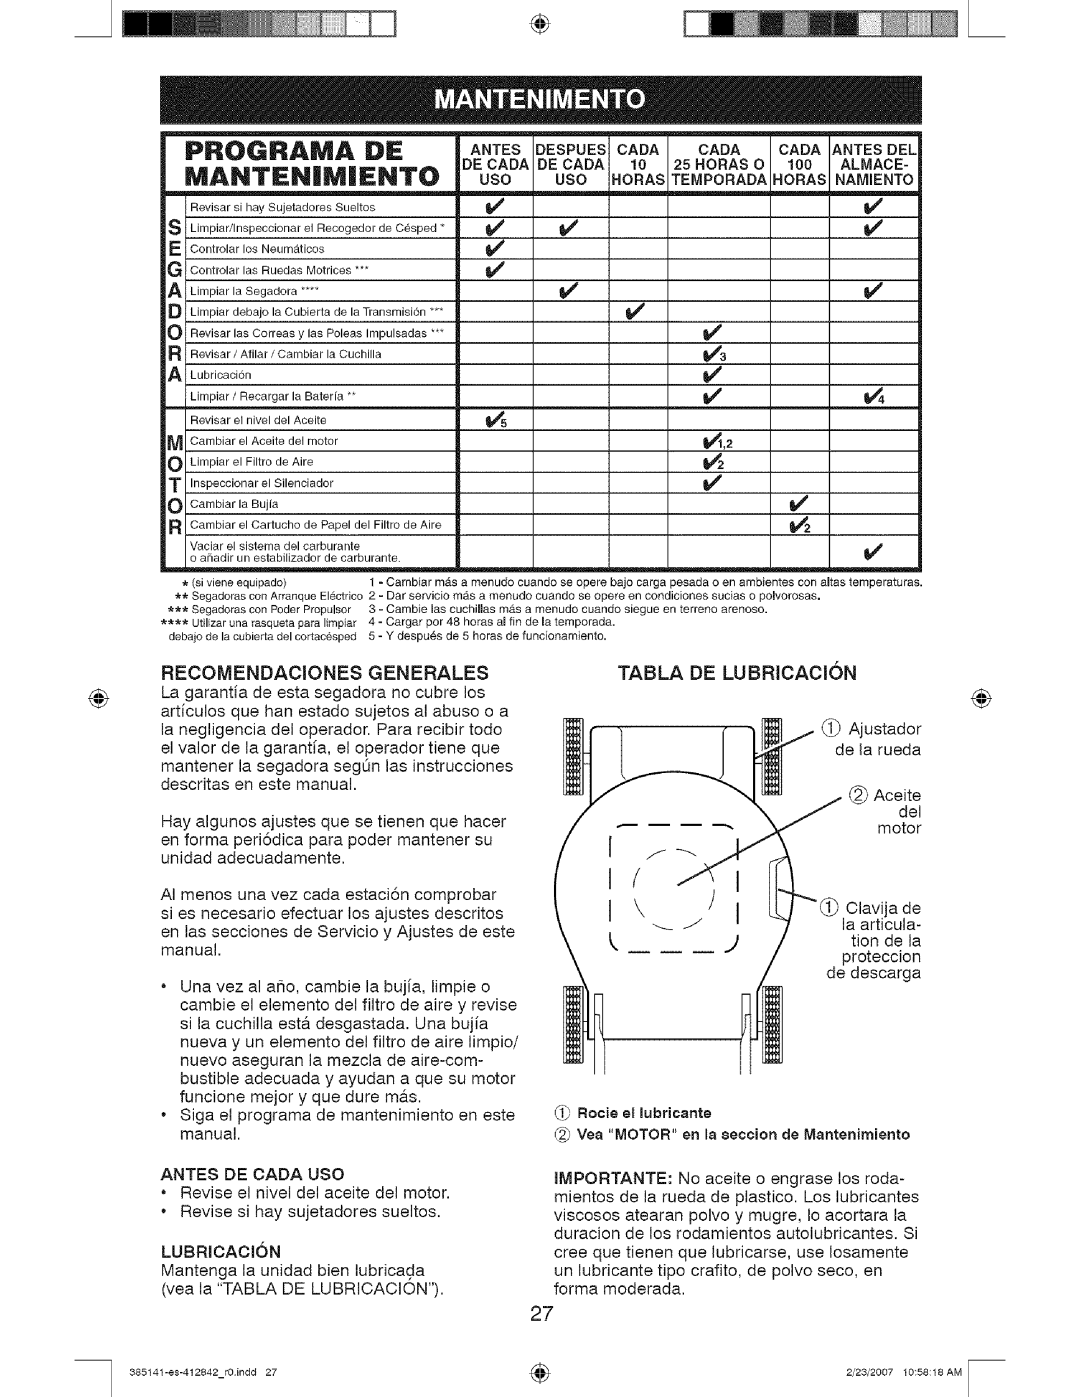 Craftsman 385141, 917 manual PROGRAIVlA, Manten|Miento, Recomendaciones Generales 